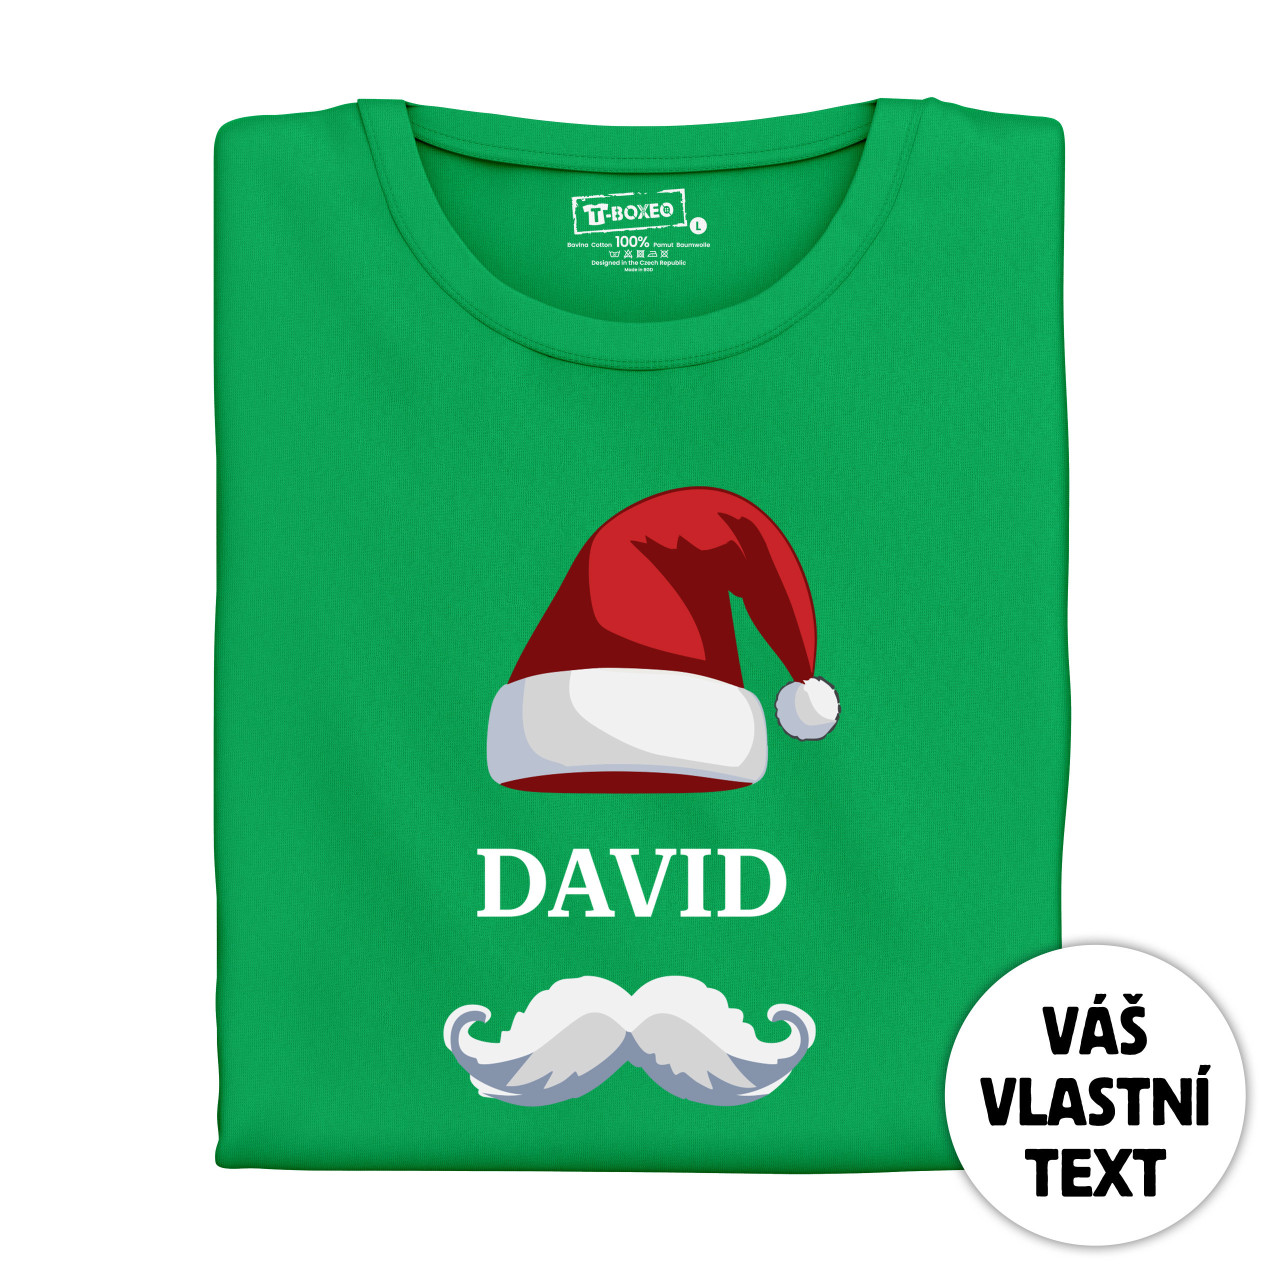 Pánské tričko s potiskem “Vánoční čepice s knírem” a jménem